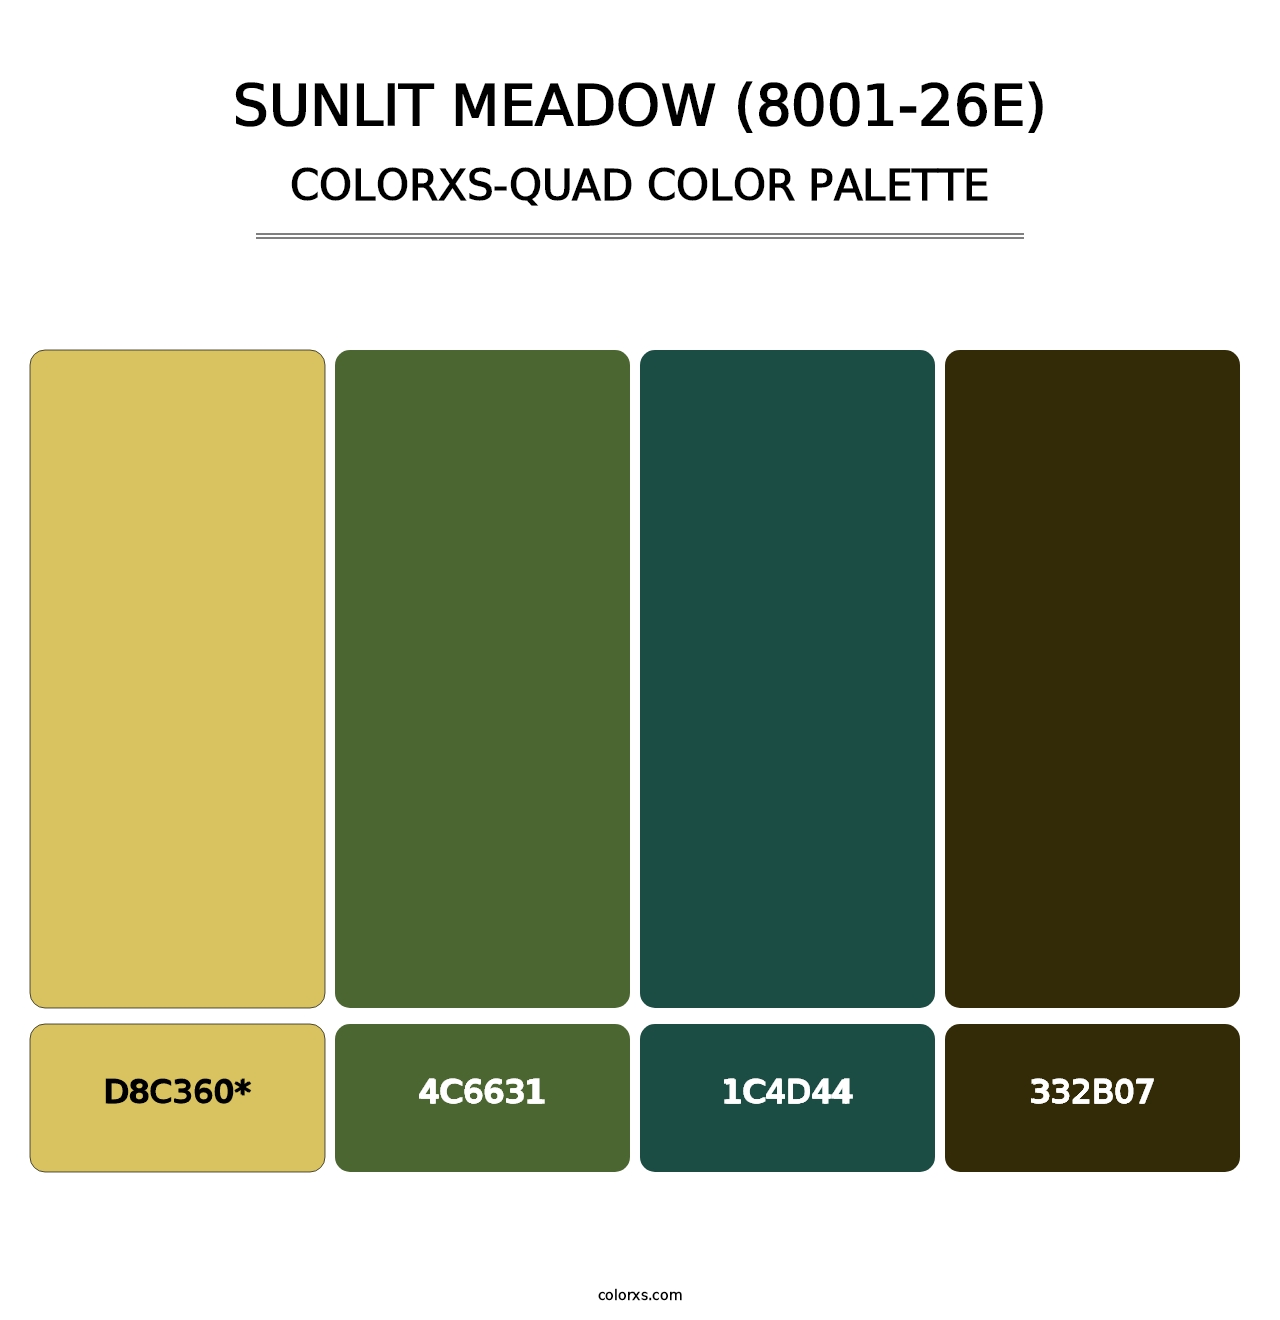 Sunlit Meadow (8001-26E) - Colorxs Quad Palette